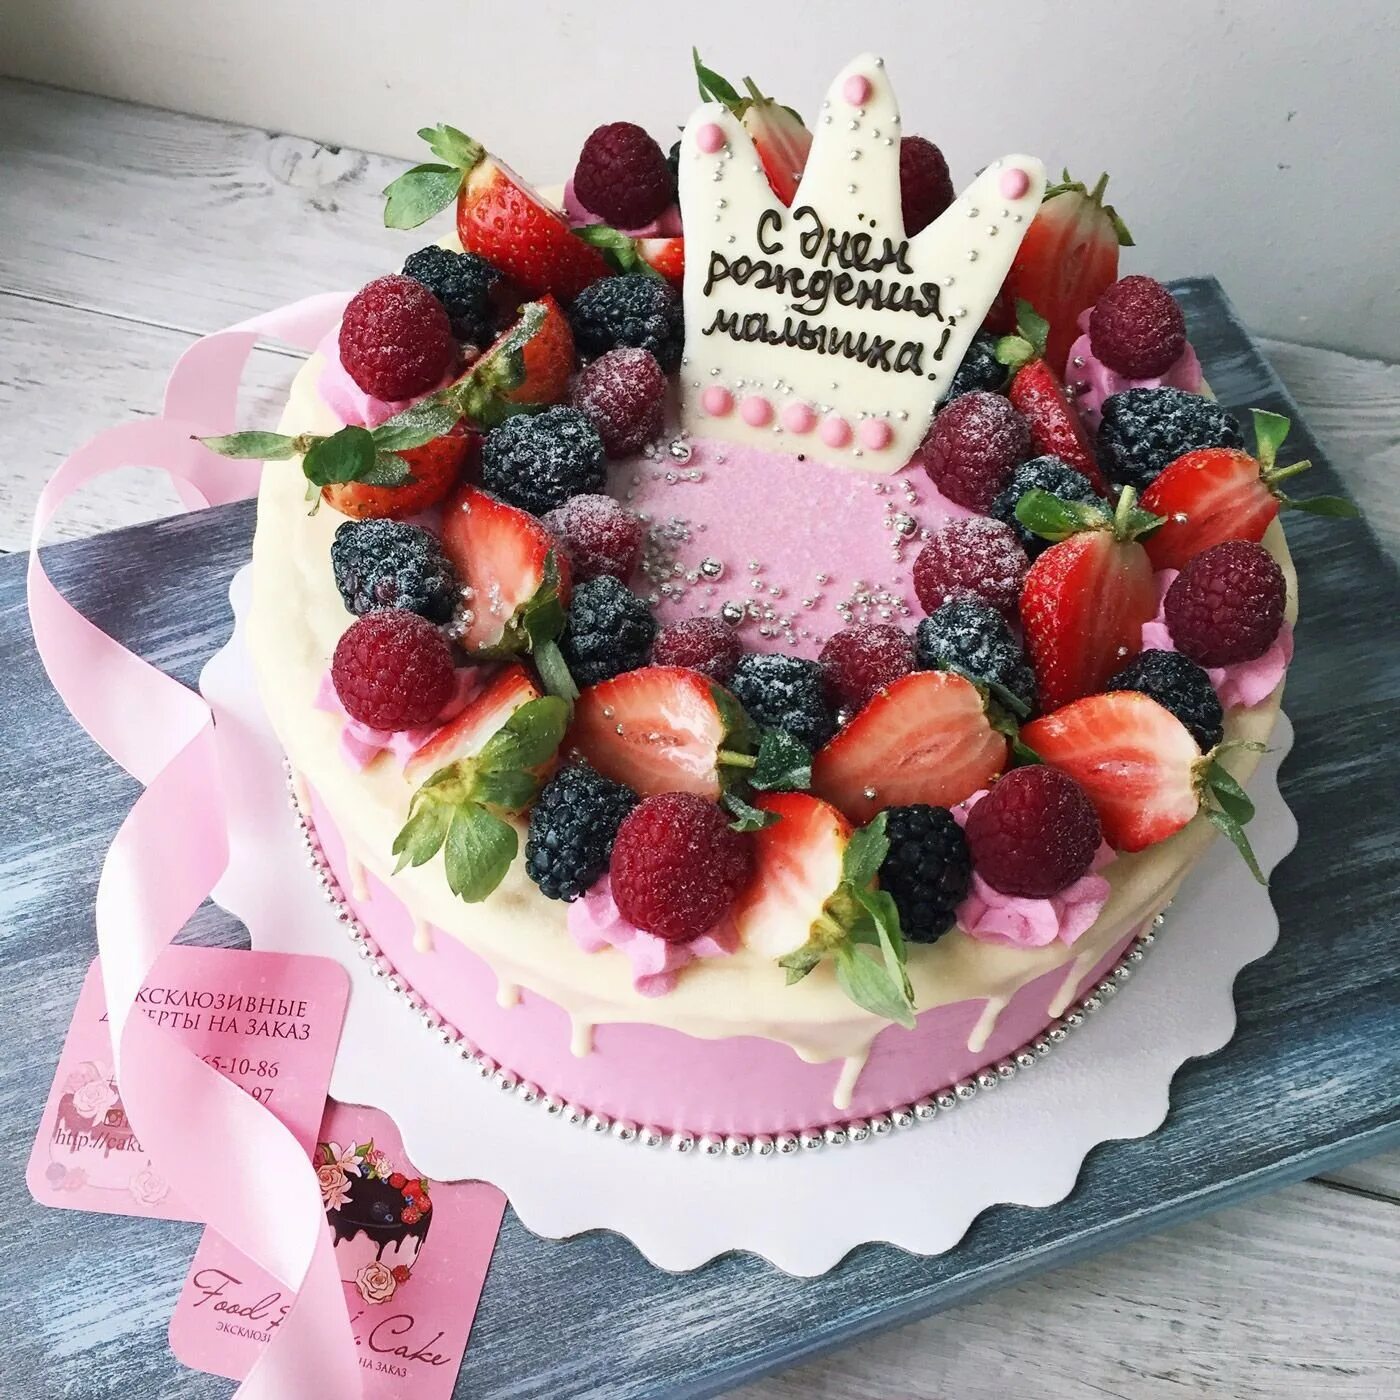 Торты на работу на день рождения. Торт с днем рождения!. Торт для мамы с ягодами. Торт девушке на др фруктовый. Ягодный торт на день рождения.